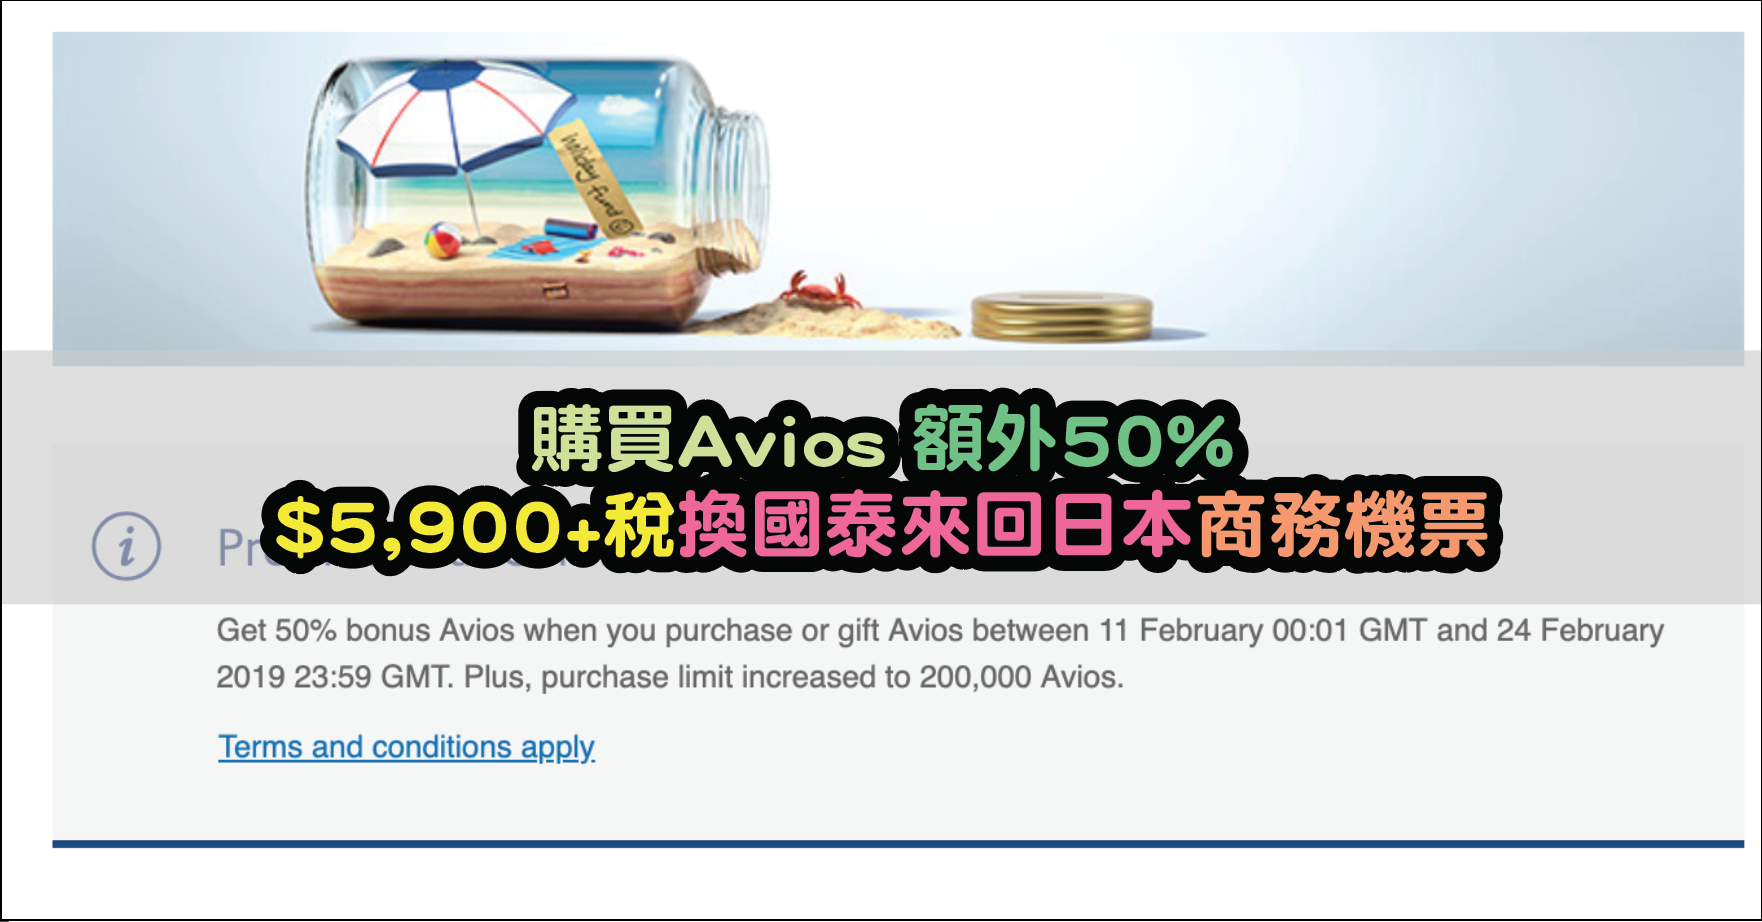 英國航空 British Airways Executive Club購買Avios 額外50%又黎啦！買定唔買，用得到先好買！